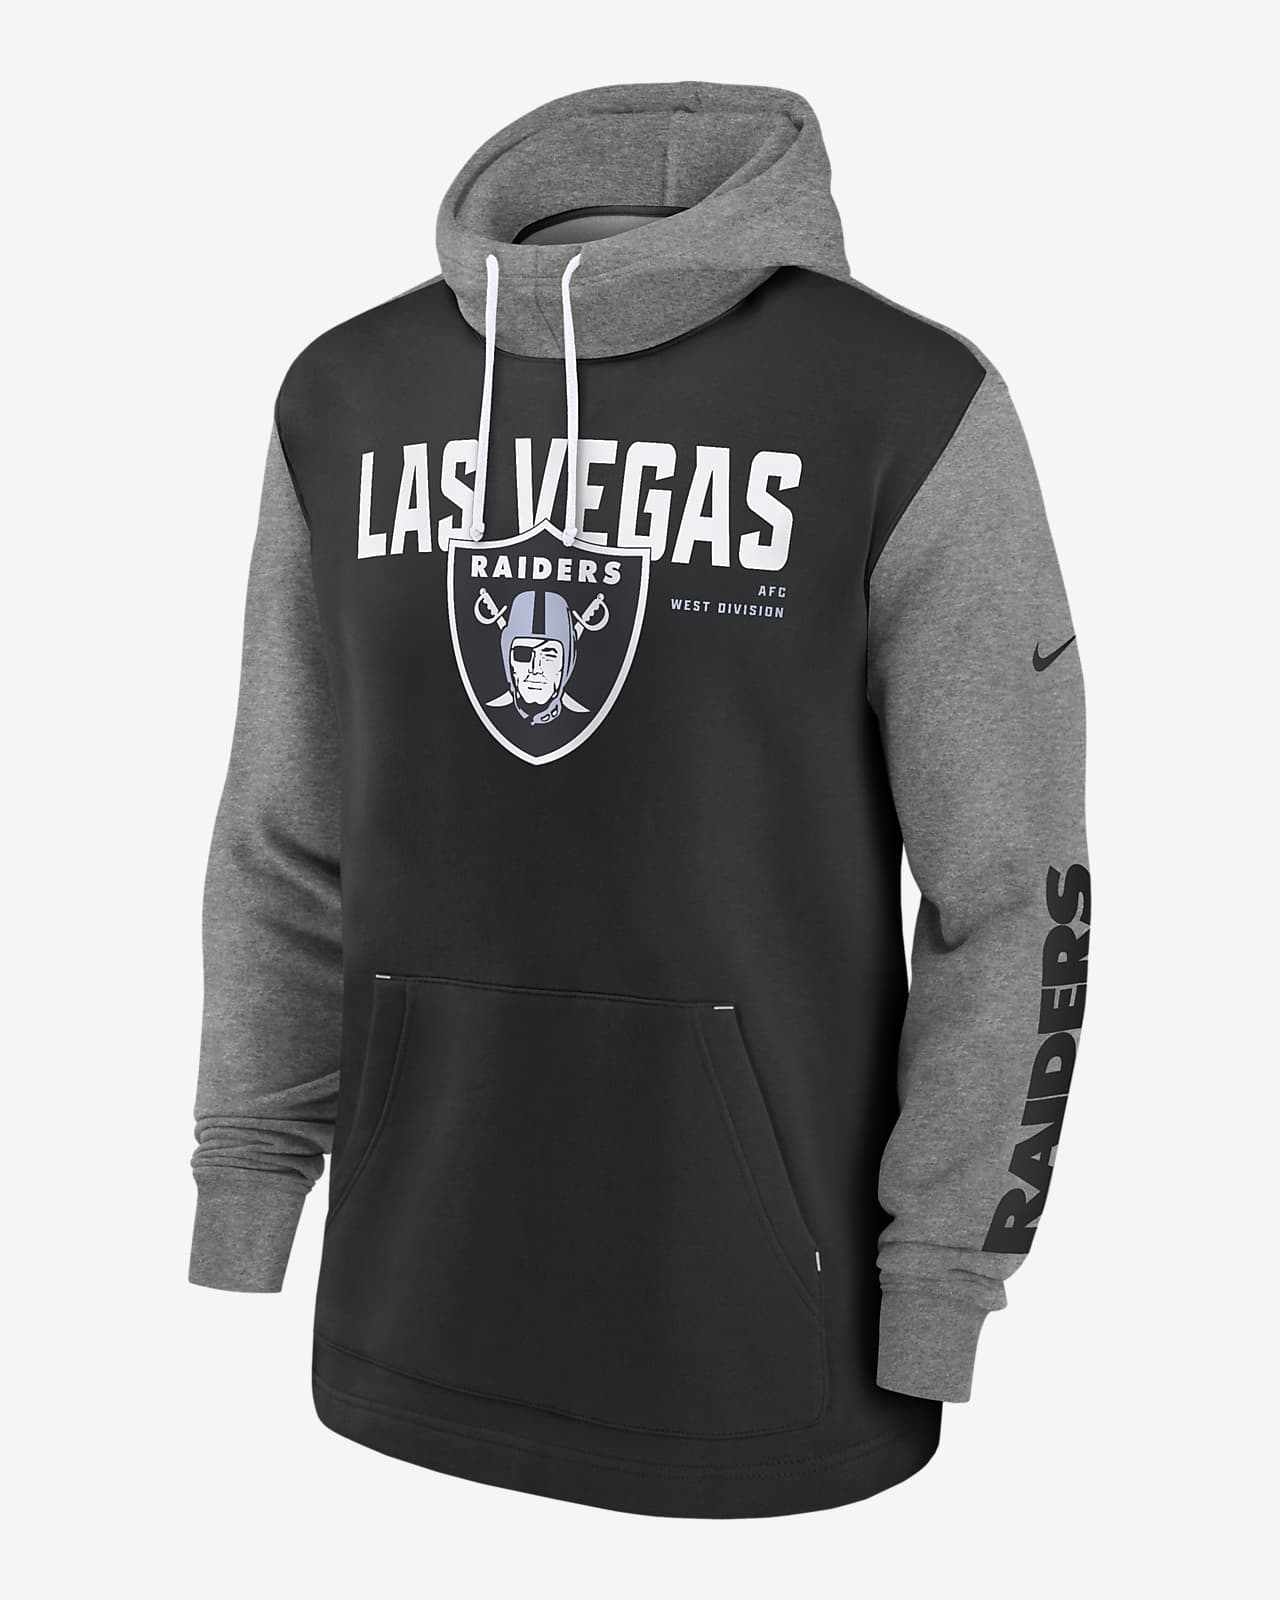 Las Vegas Raiders Color Block Men's Nike NFL Pullover Hoodie